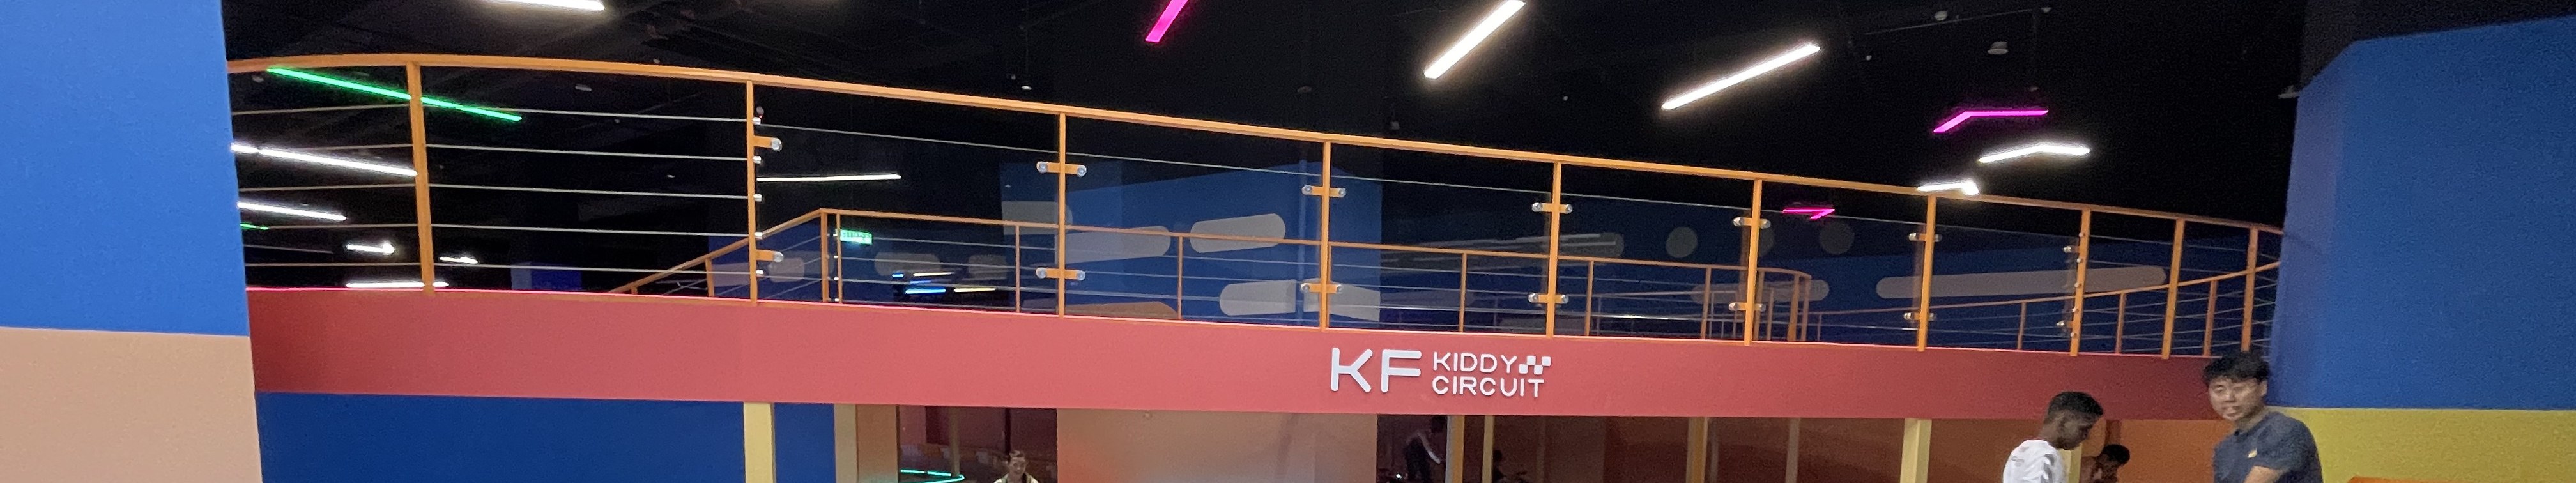 吉隆坡KF Kiddy Circuit卡丁車體驗